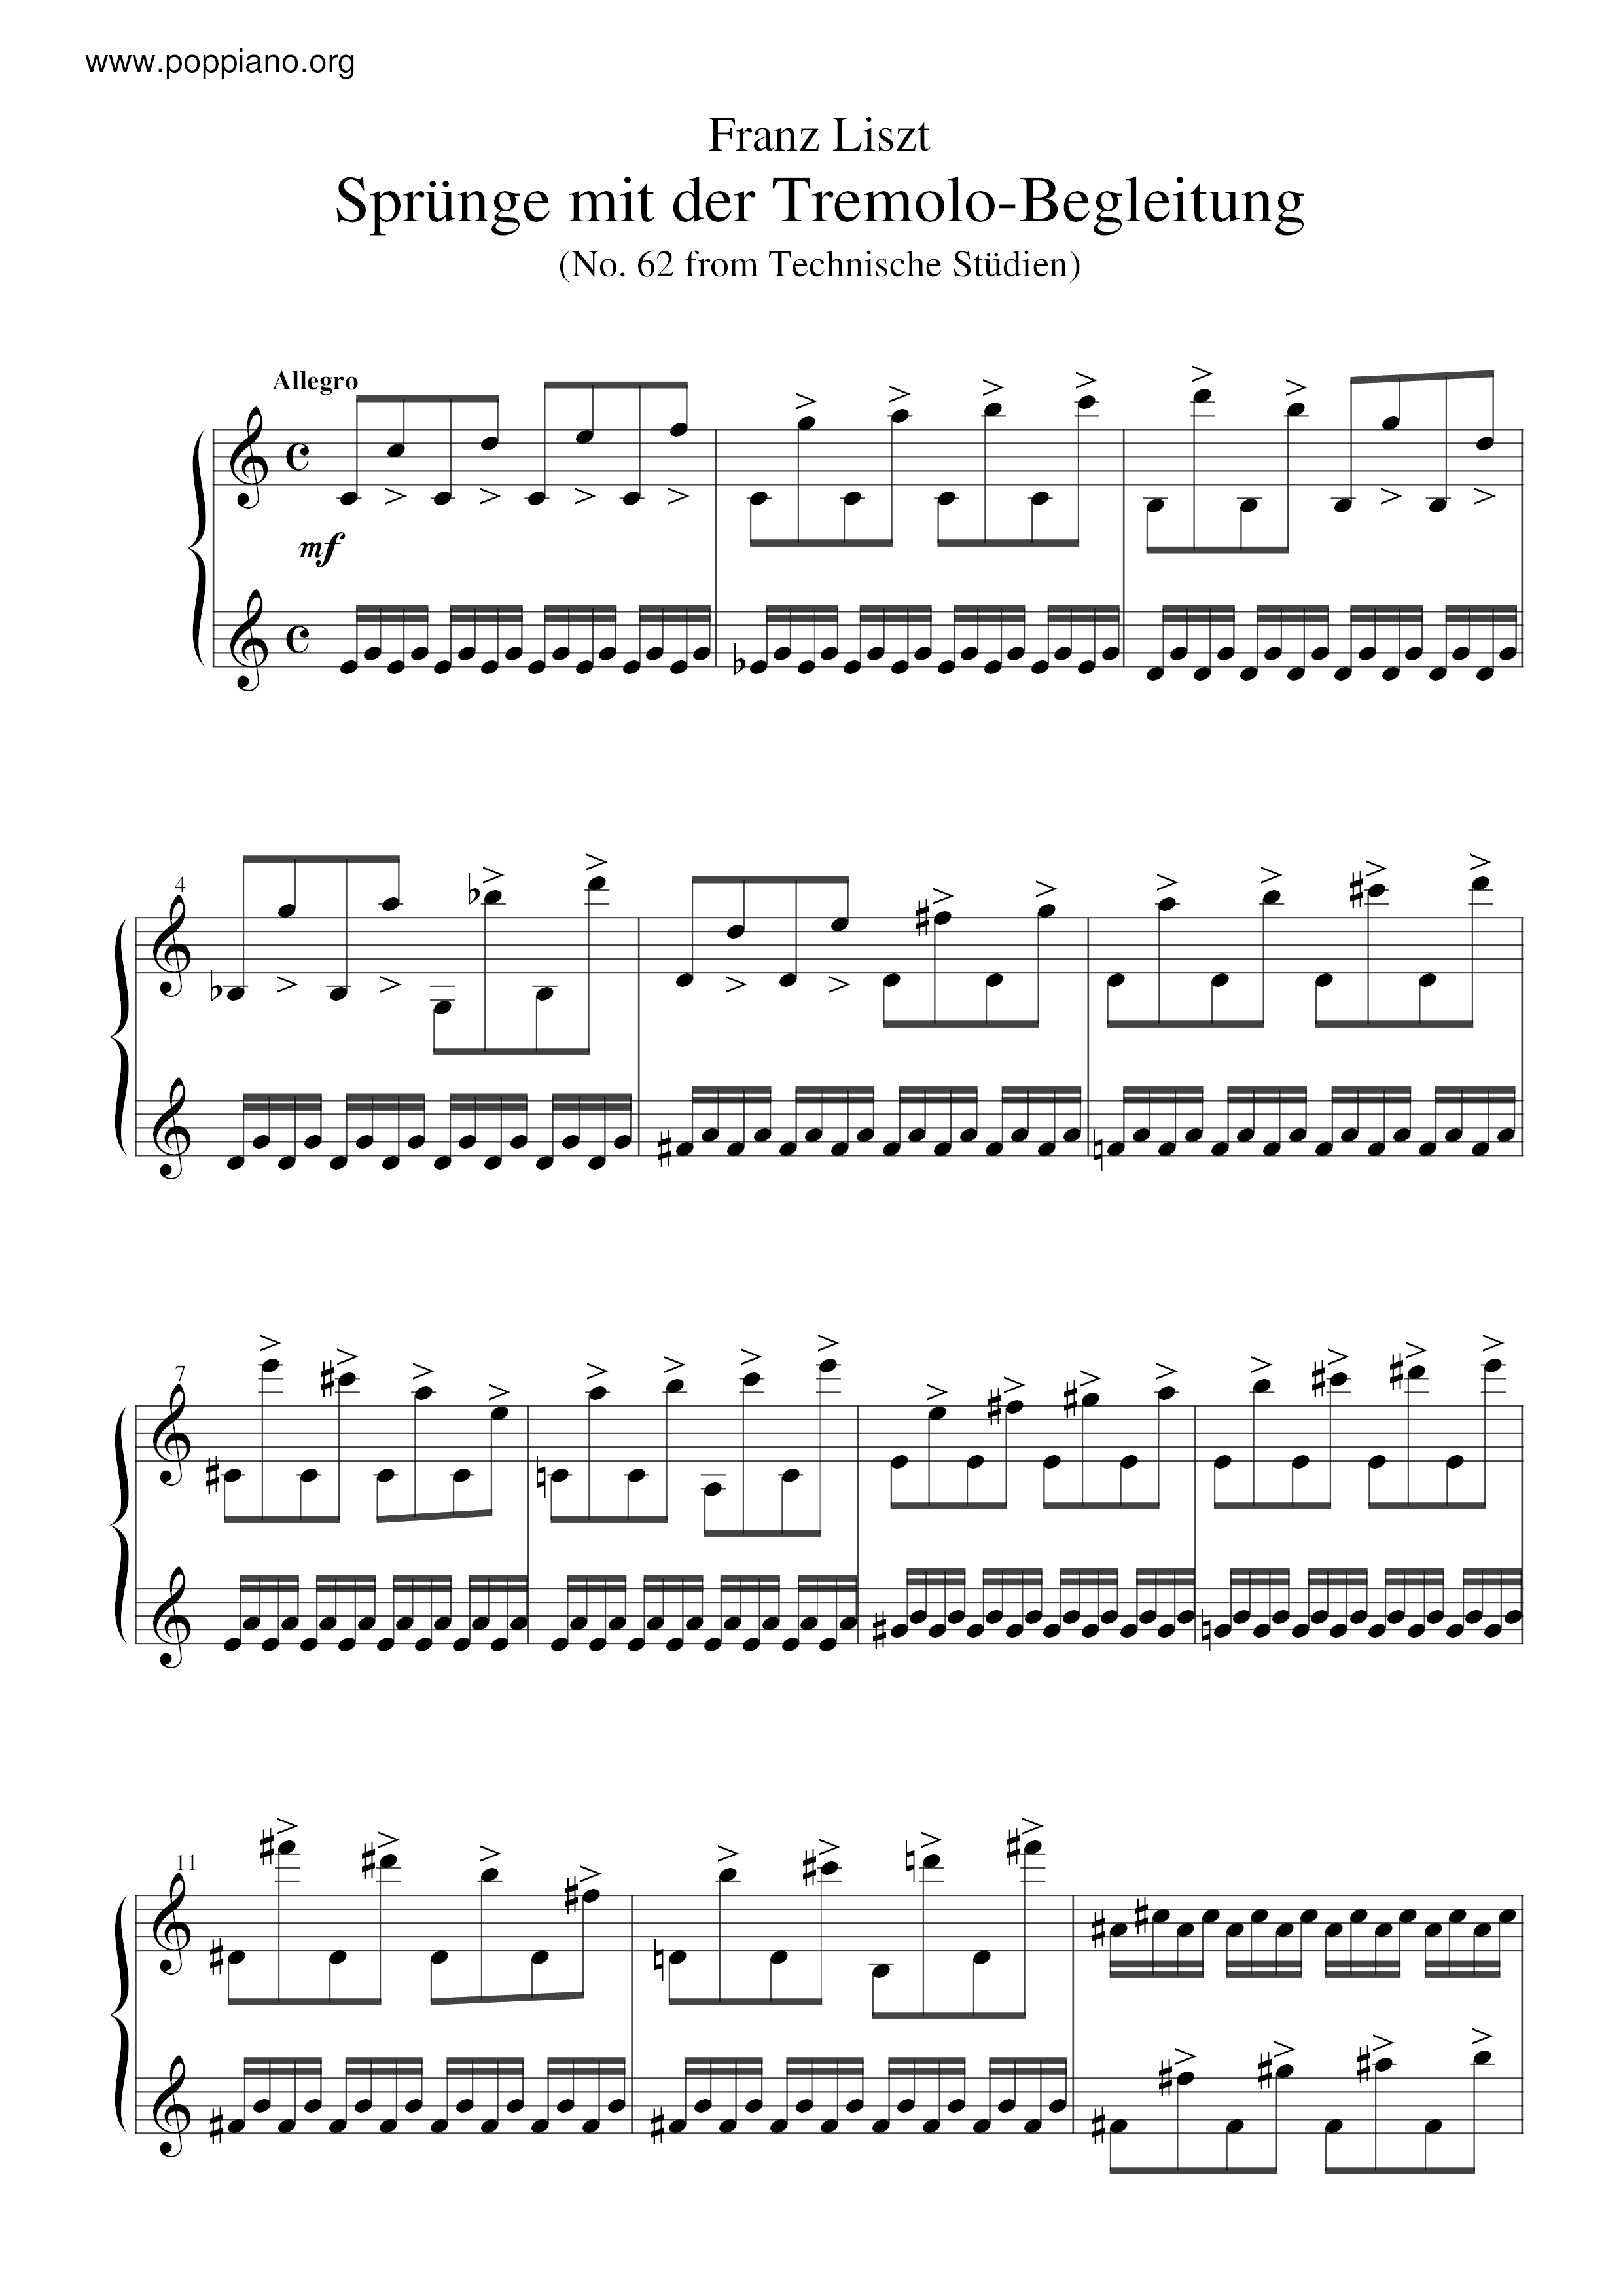 Sprunge mit der Tremolo-Begleitung, S.146/62琴谱